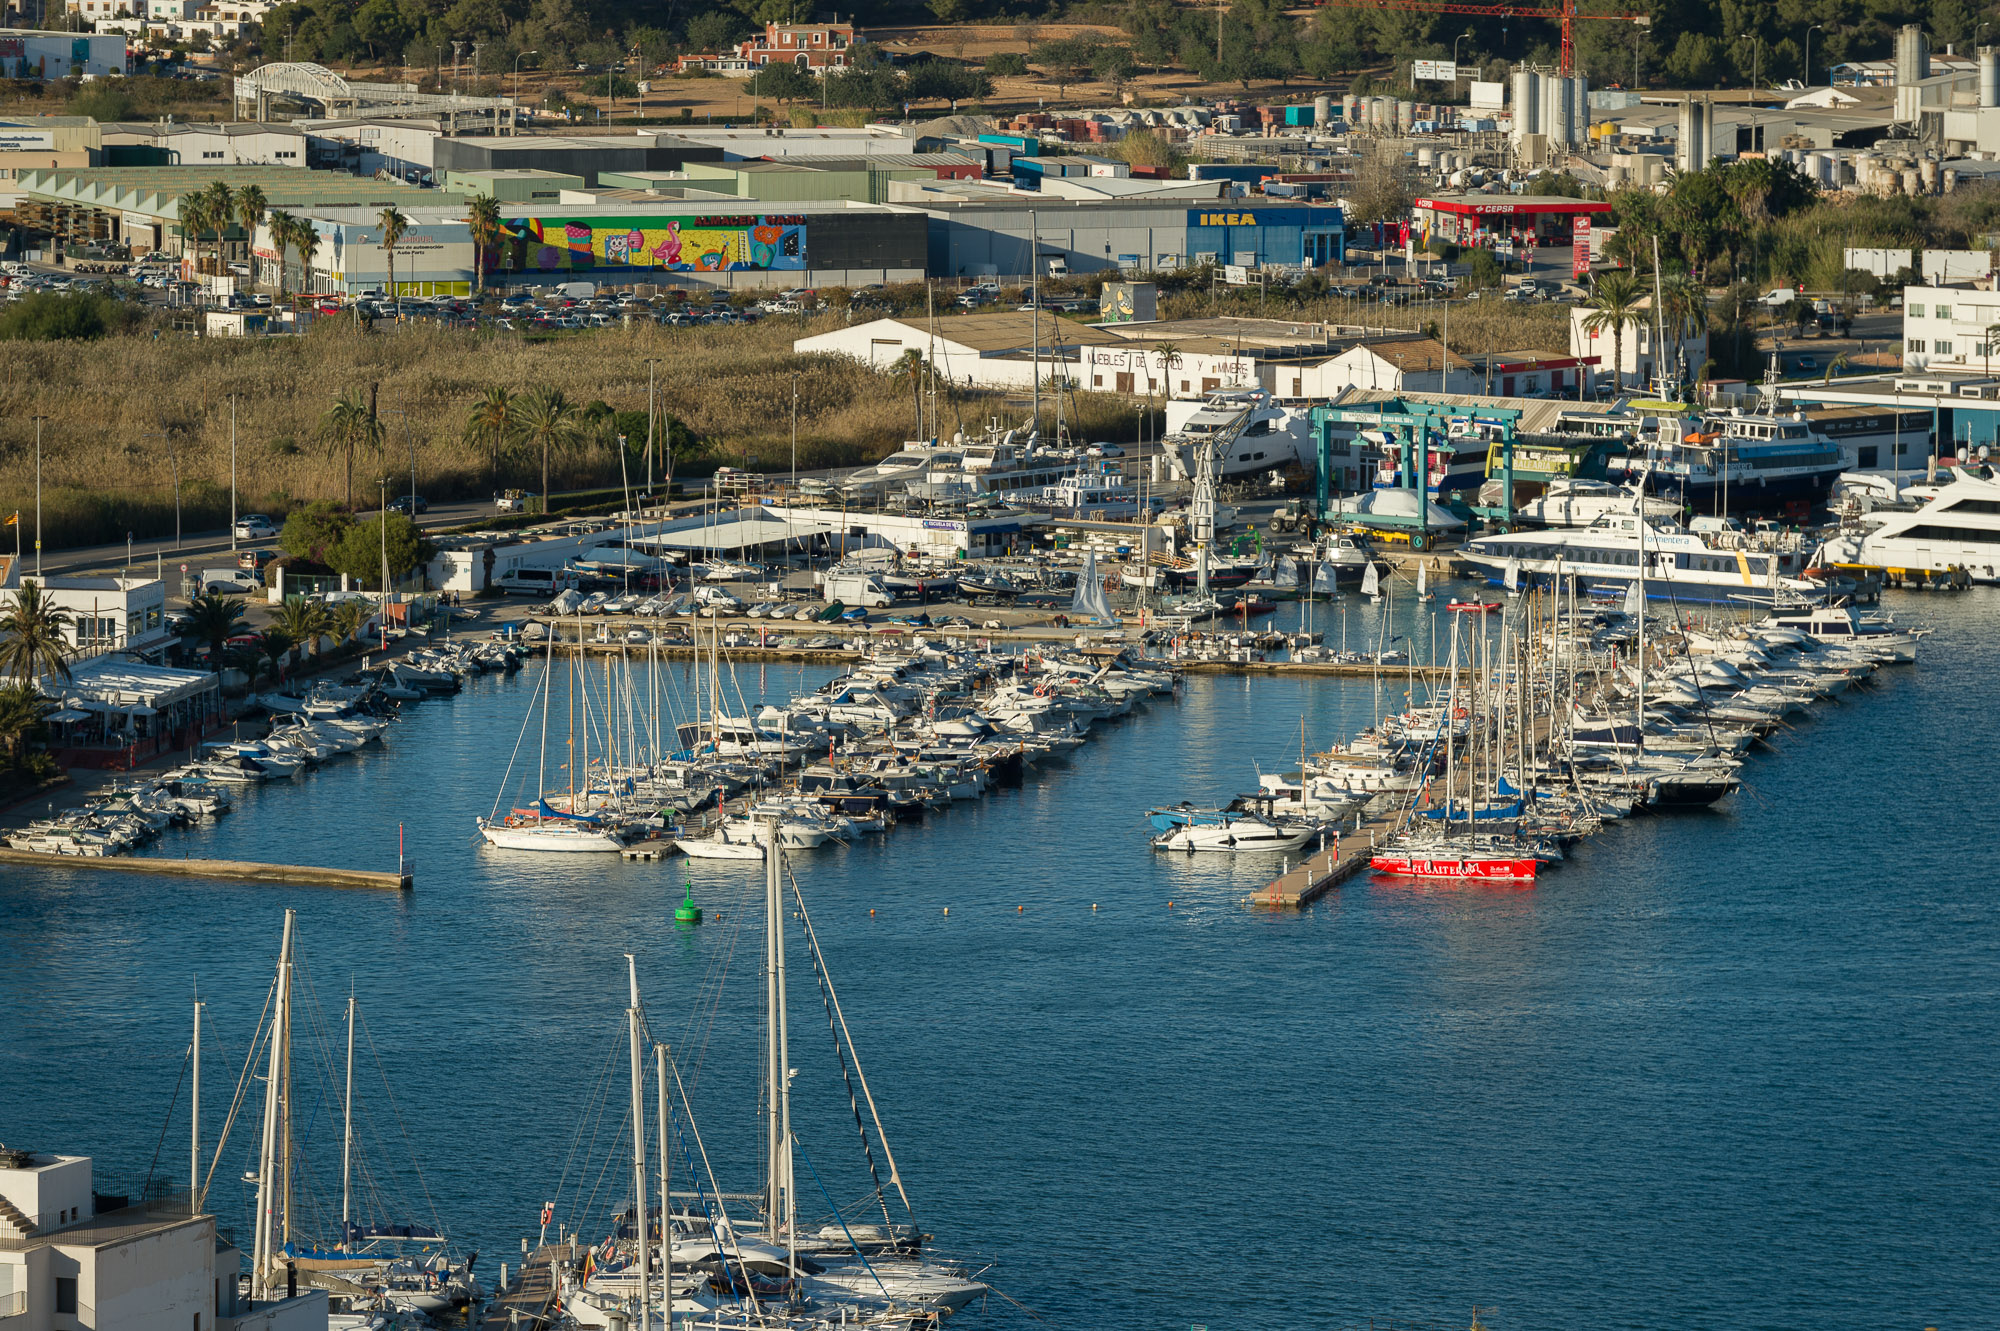 L'APB atorga l'autorització per a la gestió d'una instal·lació nàutica per a eslores petites i mitjanes al port d'Eivissa a Puertos y Litorales Sostenibles